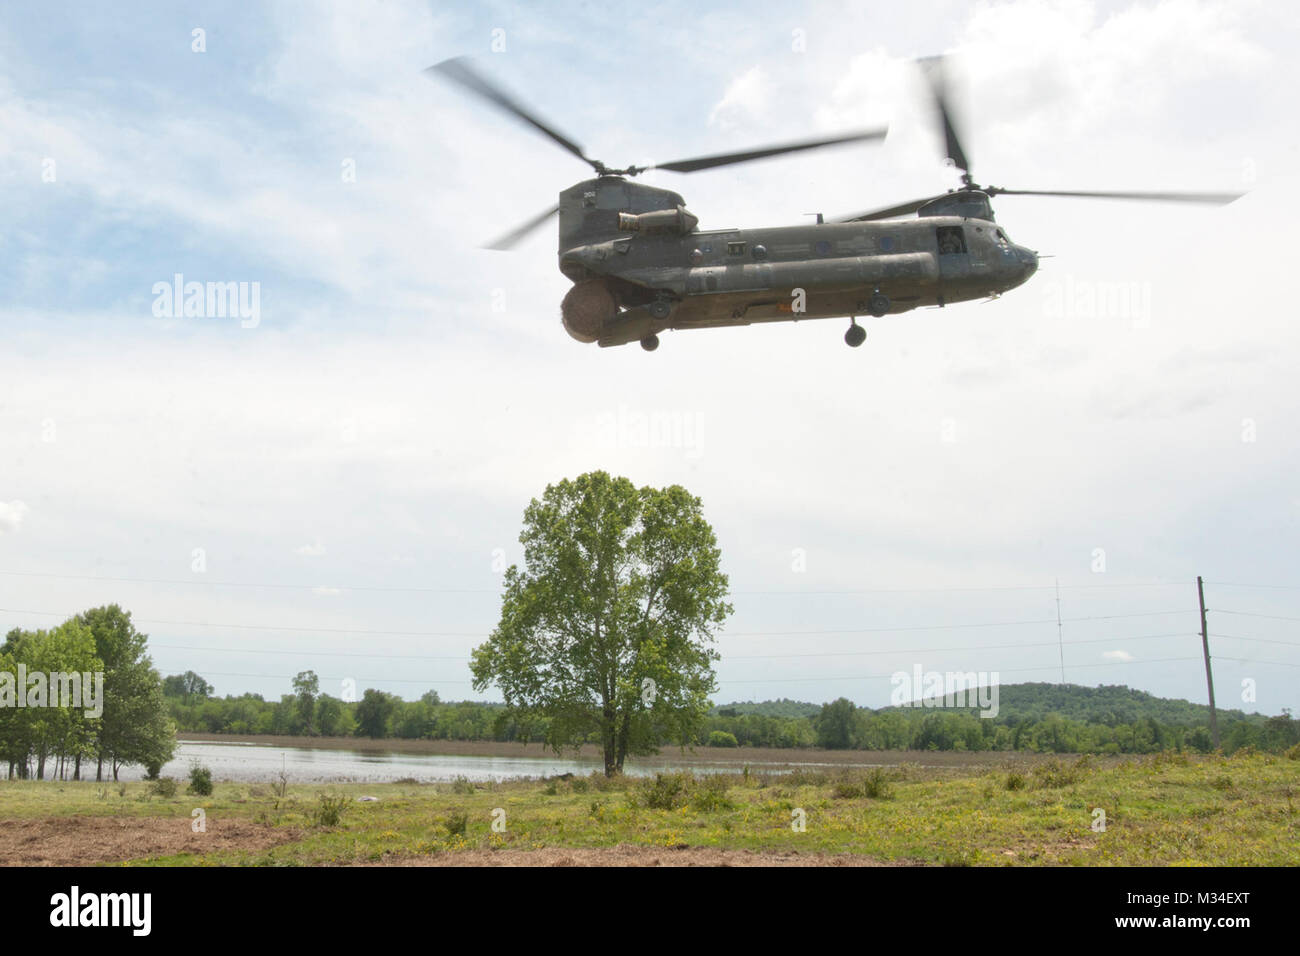 Un CH-47 Chinook', 'hélicoptère exploité par les membres de la société B, 2e Bataillon, 149e Bataillon de soutien de l'aviation générale, New Jersey Army National Guard, une chute de 1 200 livres à balles de foin sur une zone d'alimentation des bovins à Muskogee Comté. Plus de 100 vaches qui étaient bloqués par les inondations après de fortes pluies au cours de la semaine du Memorial Day ont été à l'aide de la région. L'équipage du Chinook livré plus de 14 000 livres de foin et 700 livres d'aliments pour animaux à l'animaux échoués au cours de l'état d'une journée mission service actif.PHOTO : Le Major Geoff Legler, Washington National Guard de foin d'affaires publiques 016 Drop par Oklahoma Banque D'Images